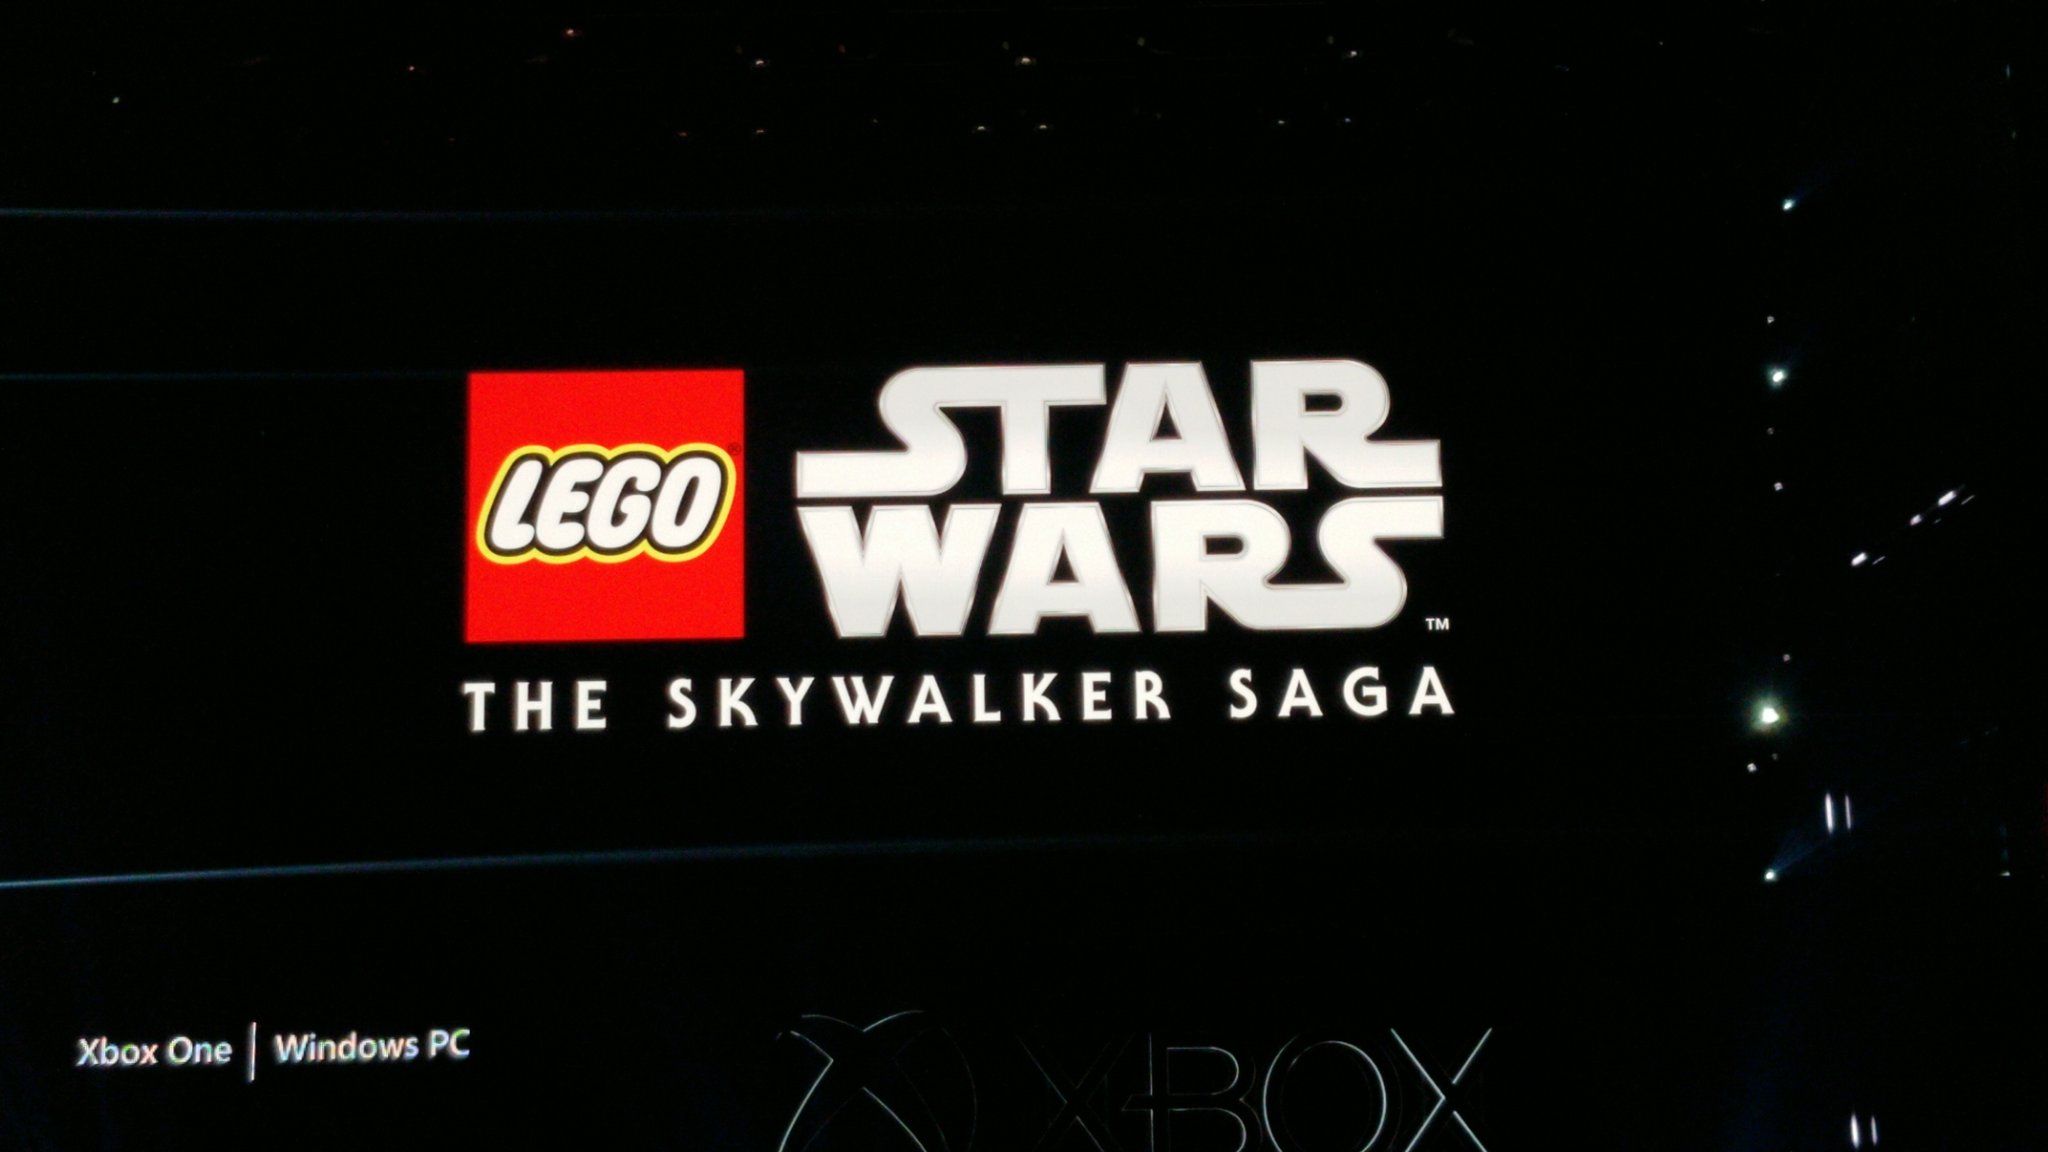 LEGO Star Wars: The Skywalker Saga Announced For 2020